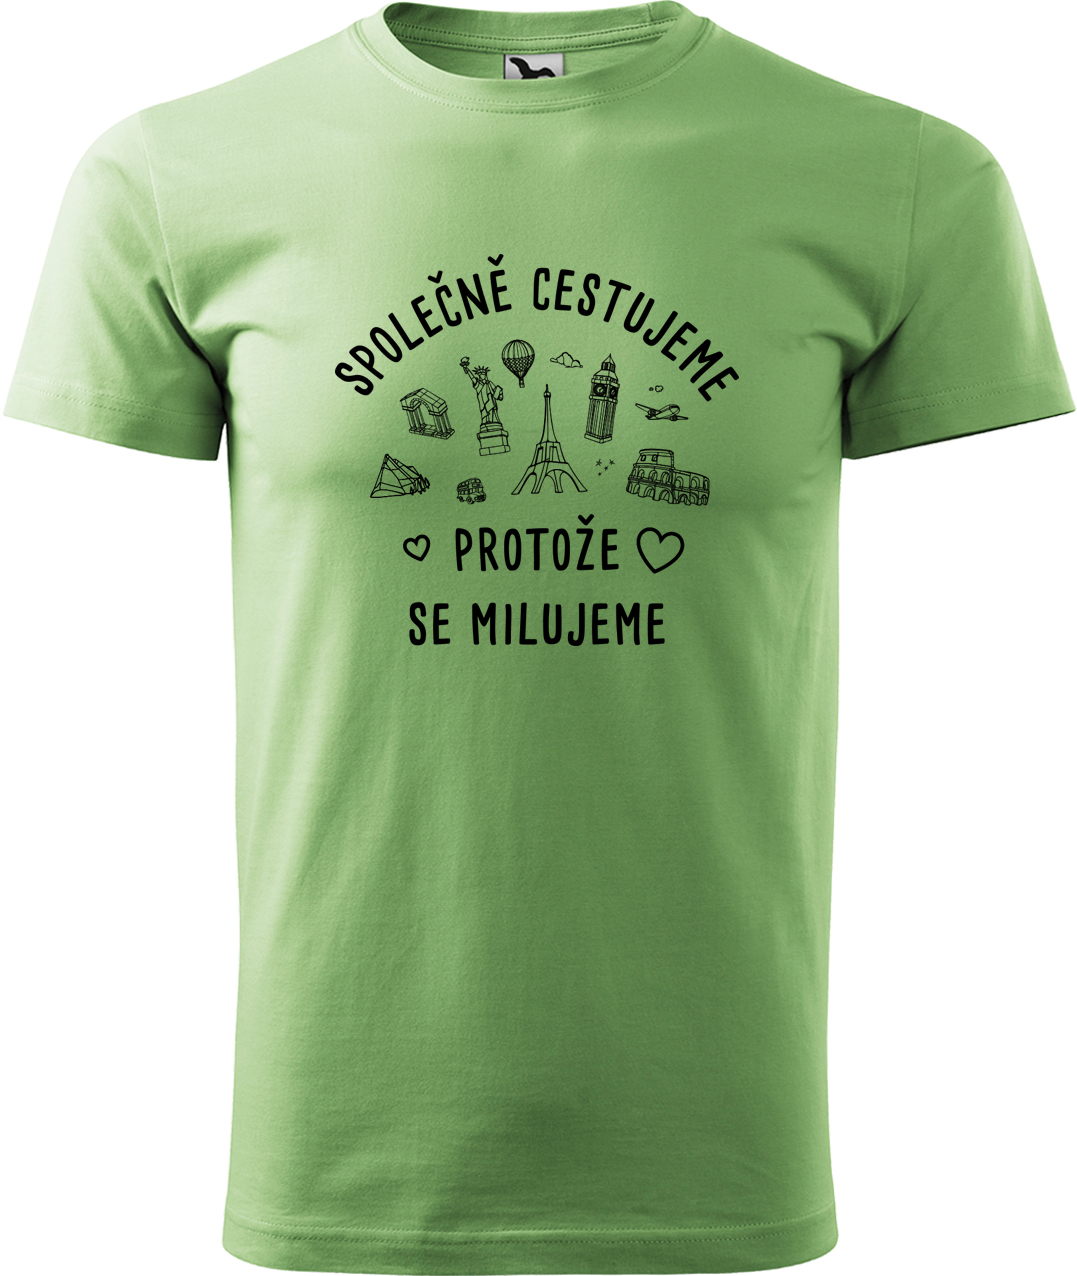 Pánské cestovatelské tričko - Společně cestujeme protože se milujeme Velikost: S, Barva: Trávově zelená (39), Střih: pánský